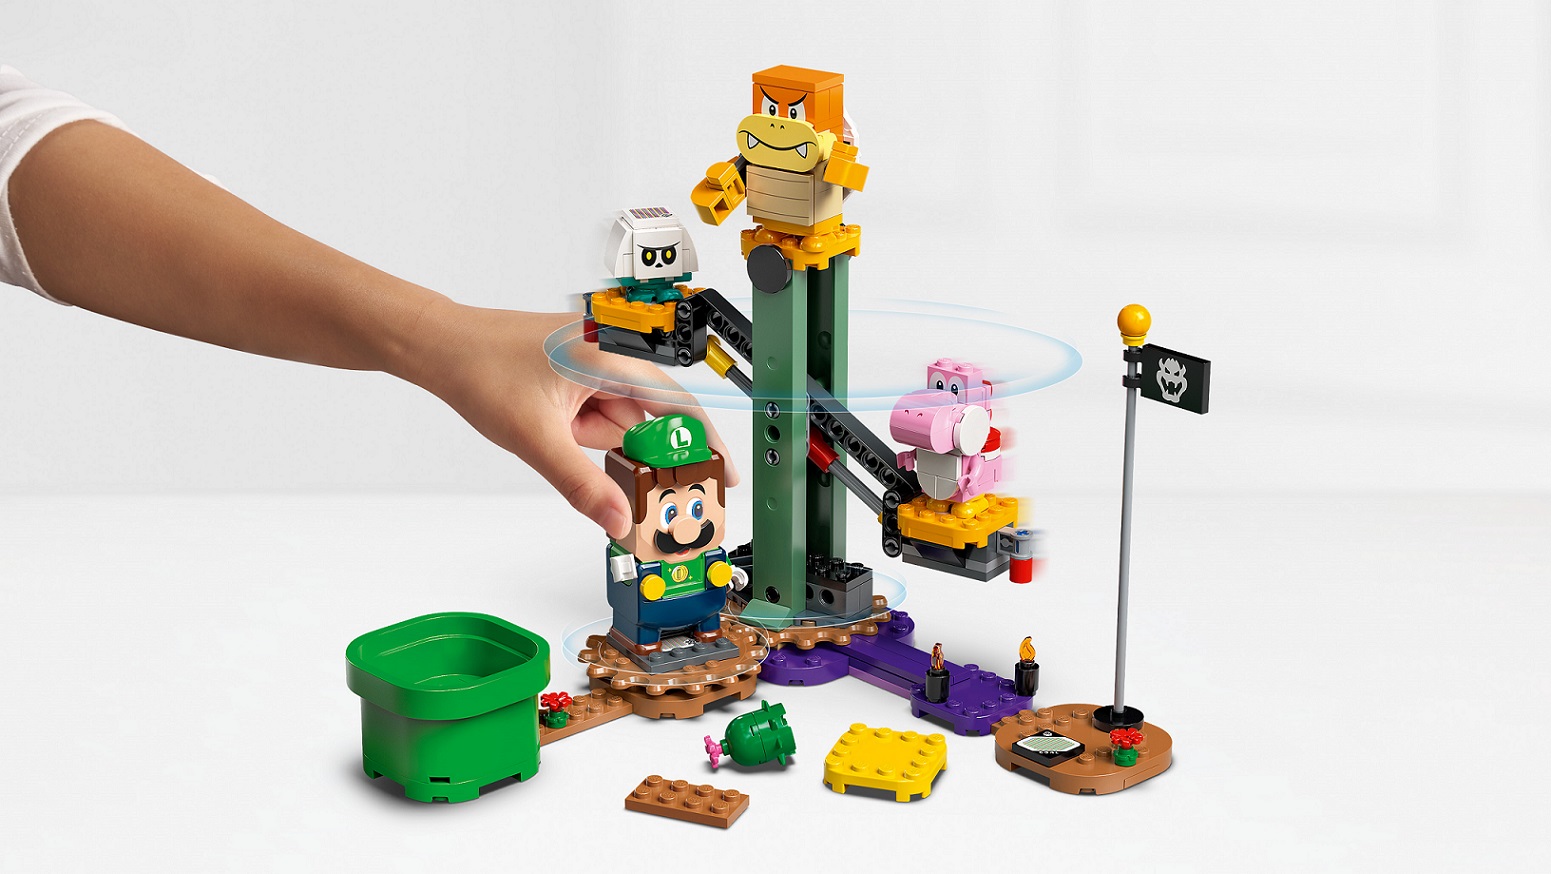 Luigi kalandjai kezdőpályán